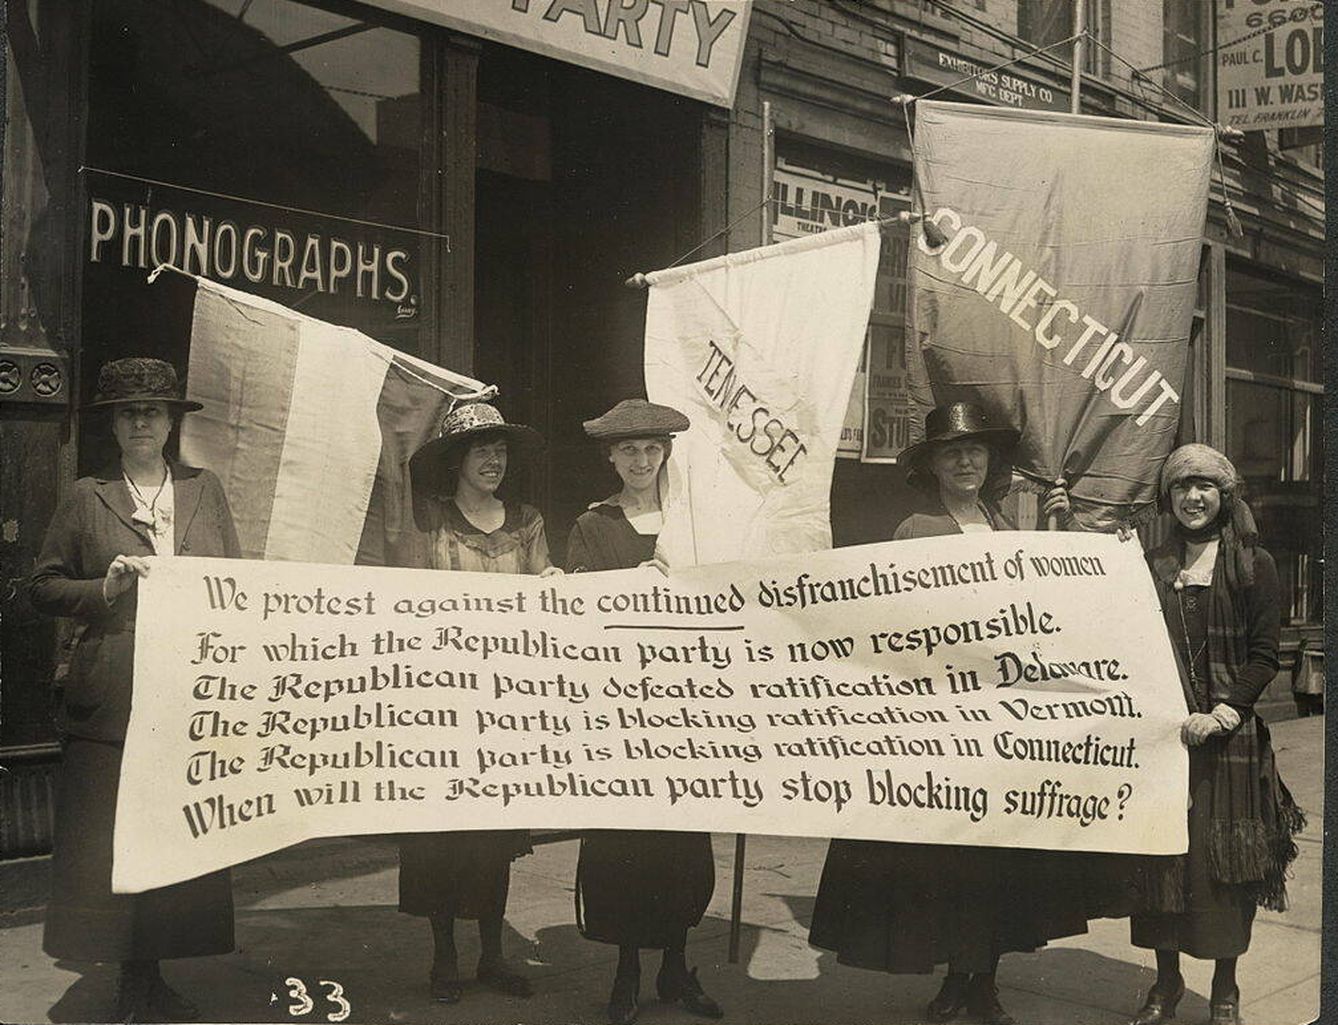 Mujeres manifestándose por el sufragio femenino en Estados Unidos en el 1920. (Dominio público)